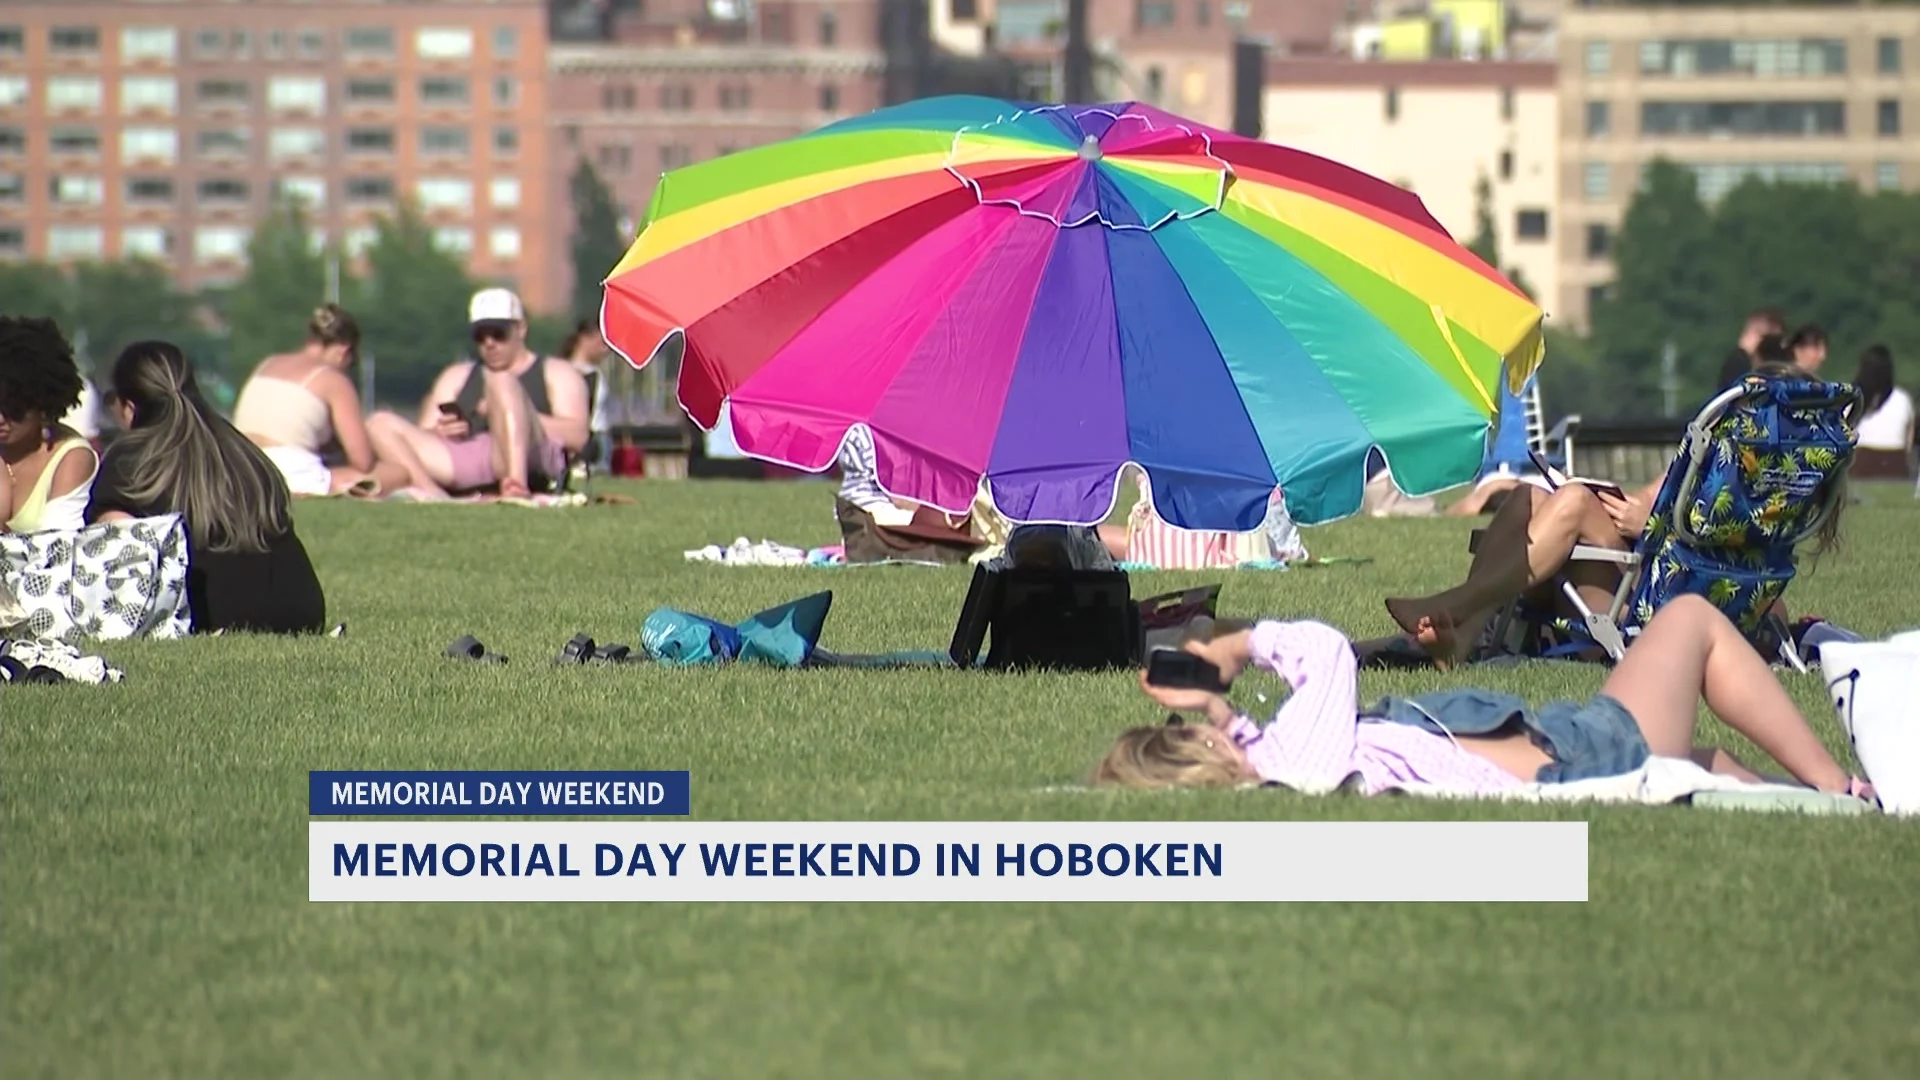 Hoboken in New Jersey Hosts Memorial Day Weekend Celebrations